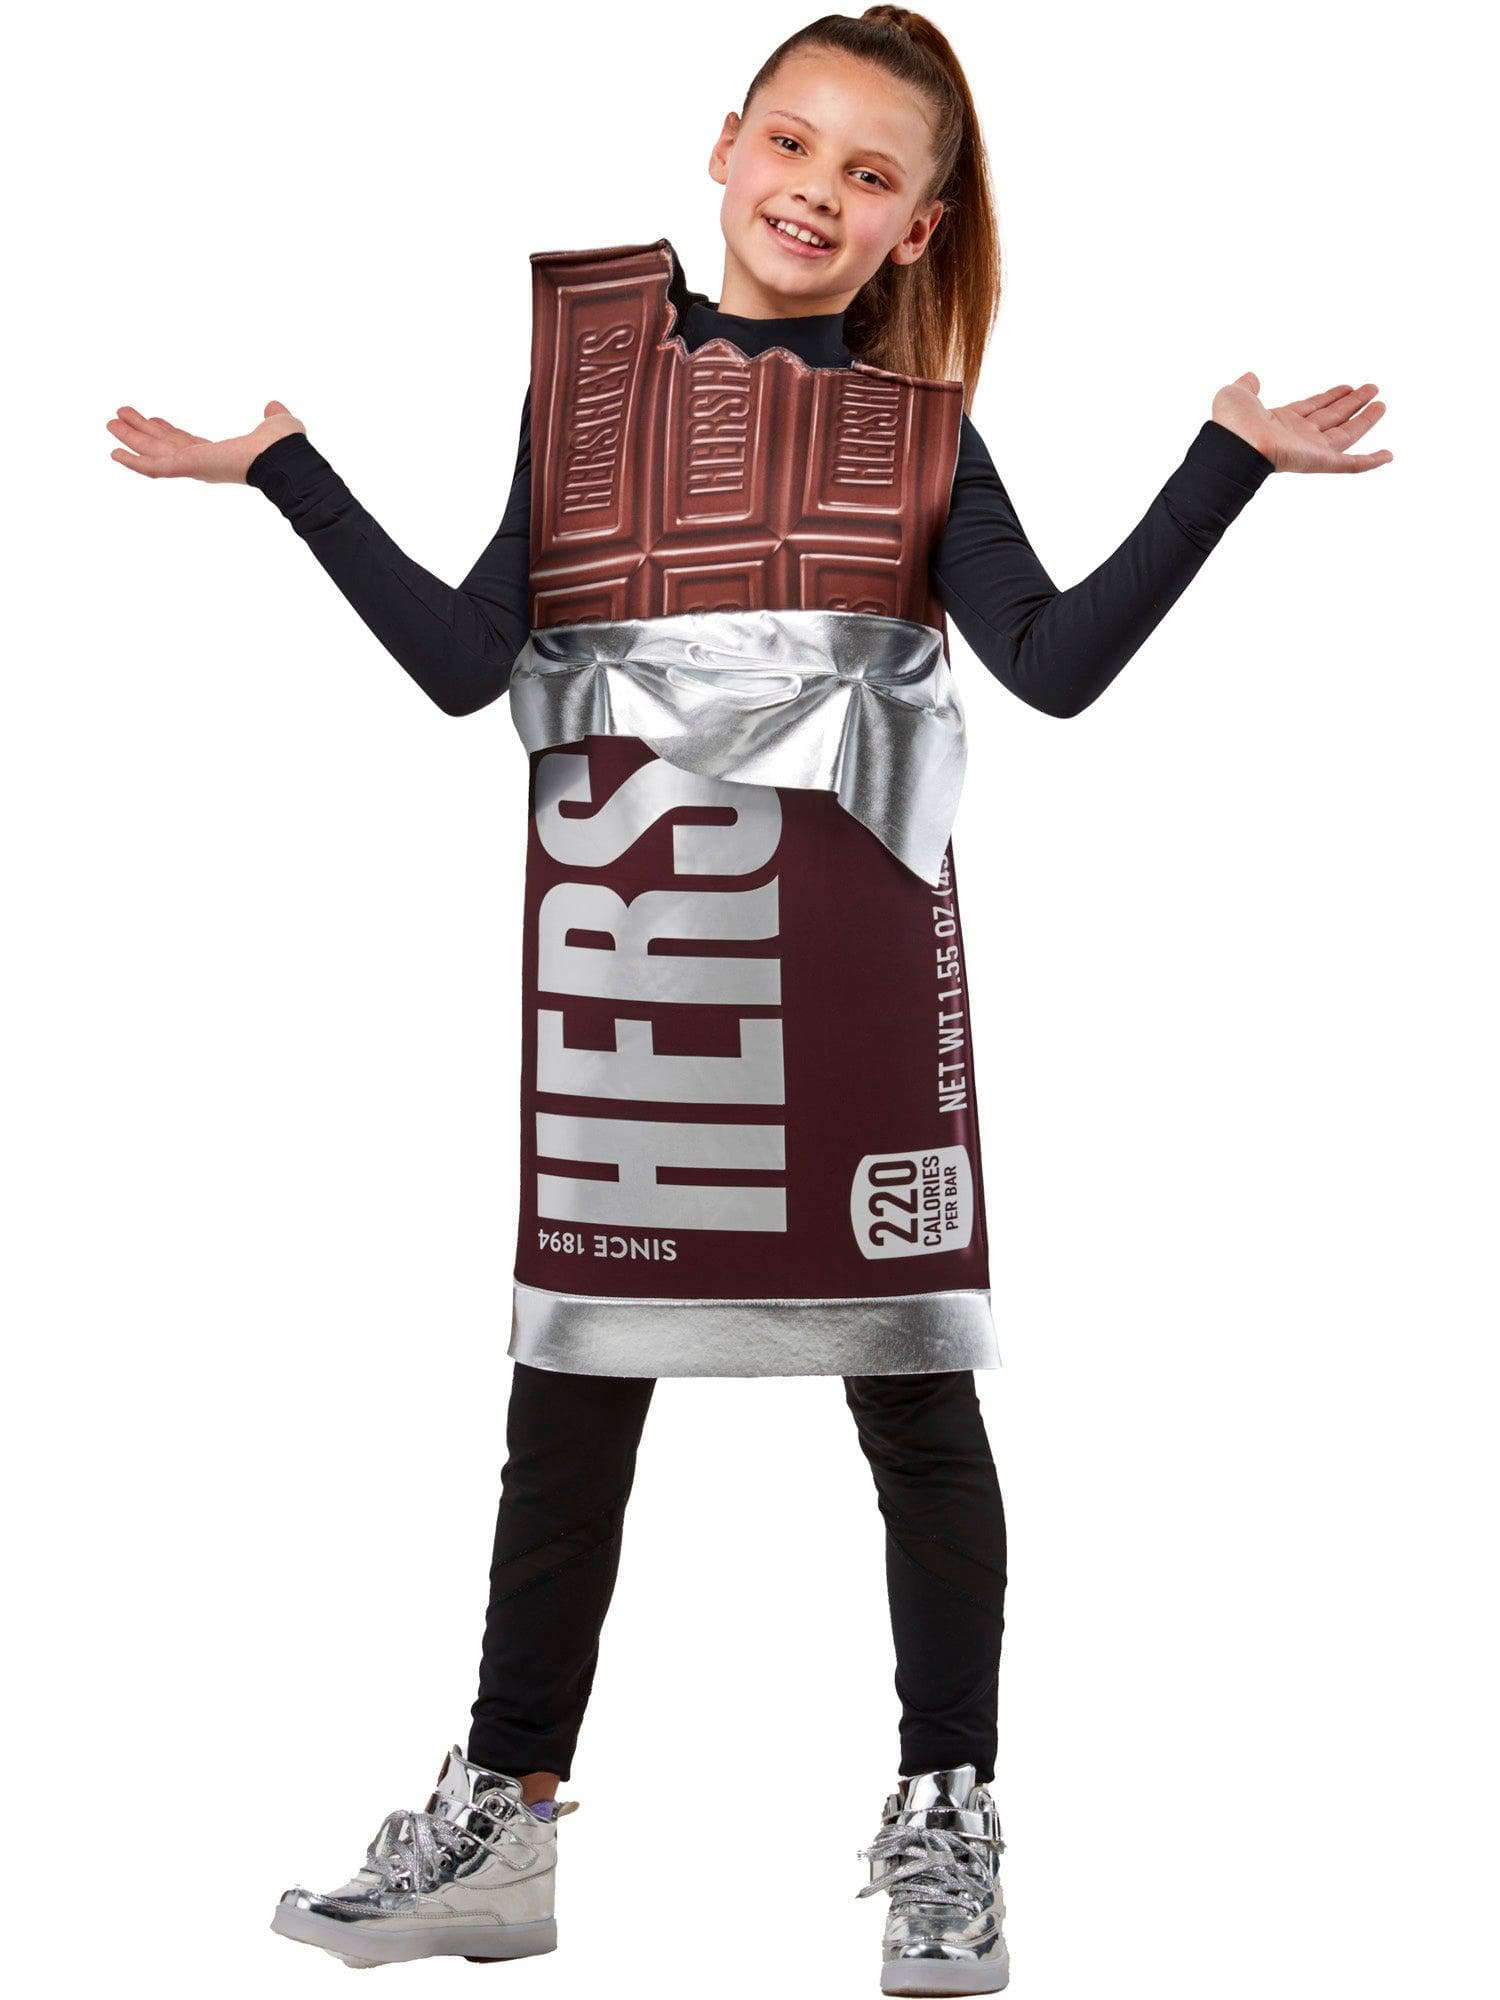 Hershey Chocolate Bar Kids Costume - costumes.com